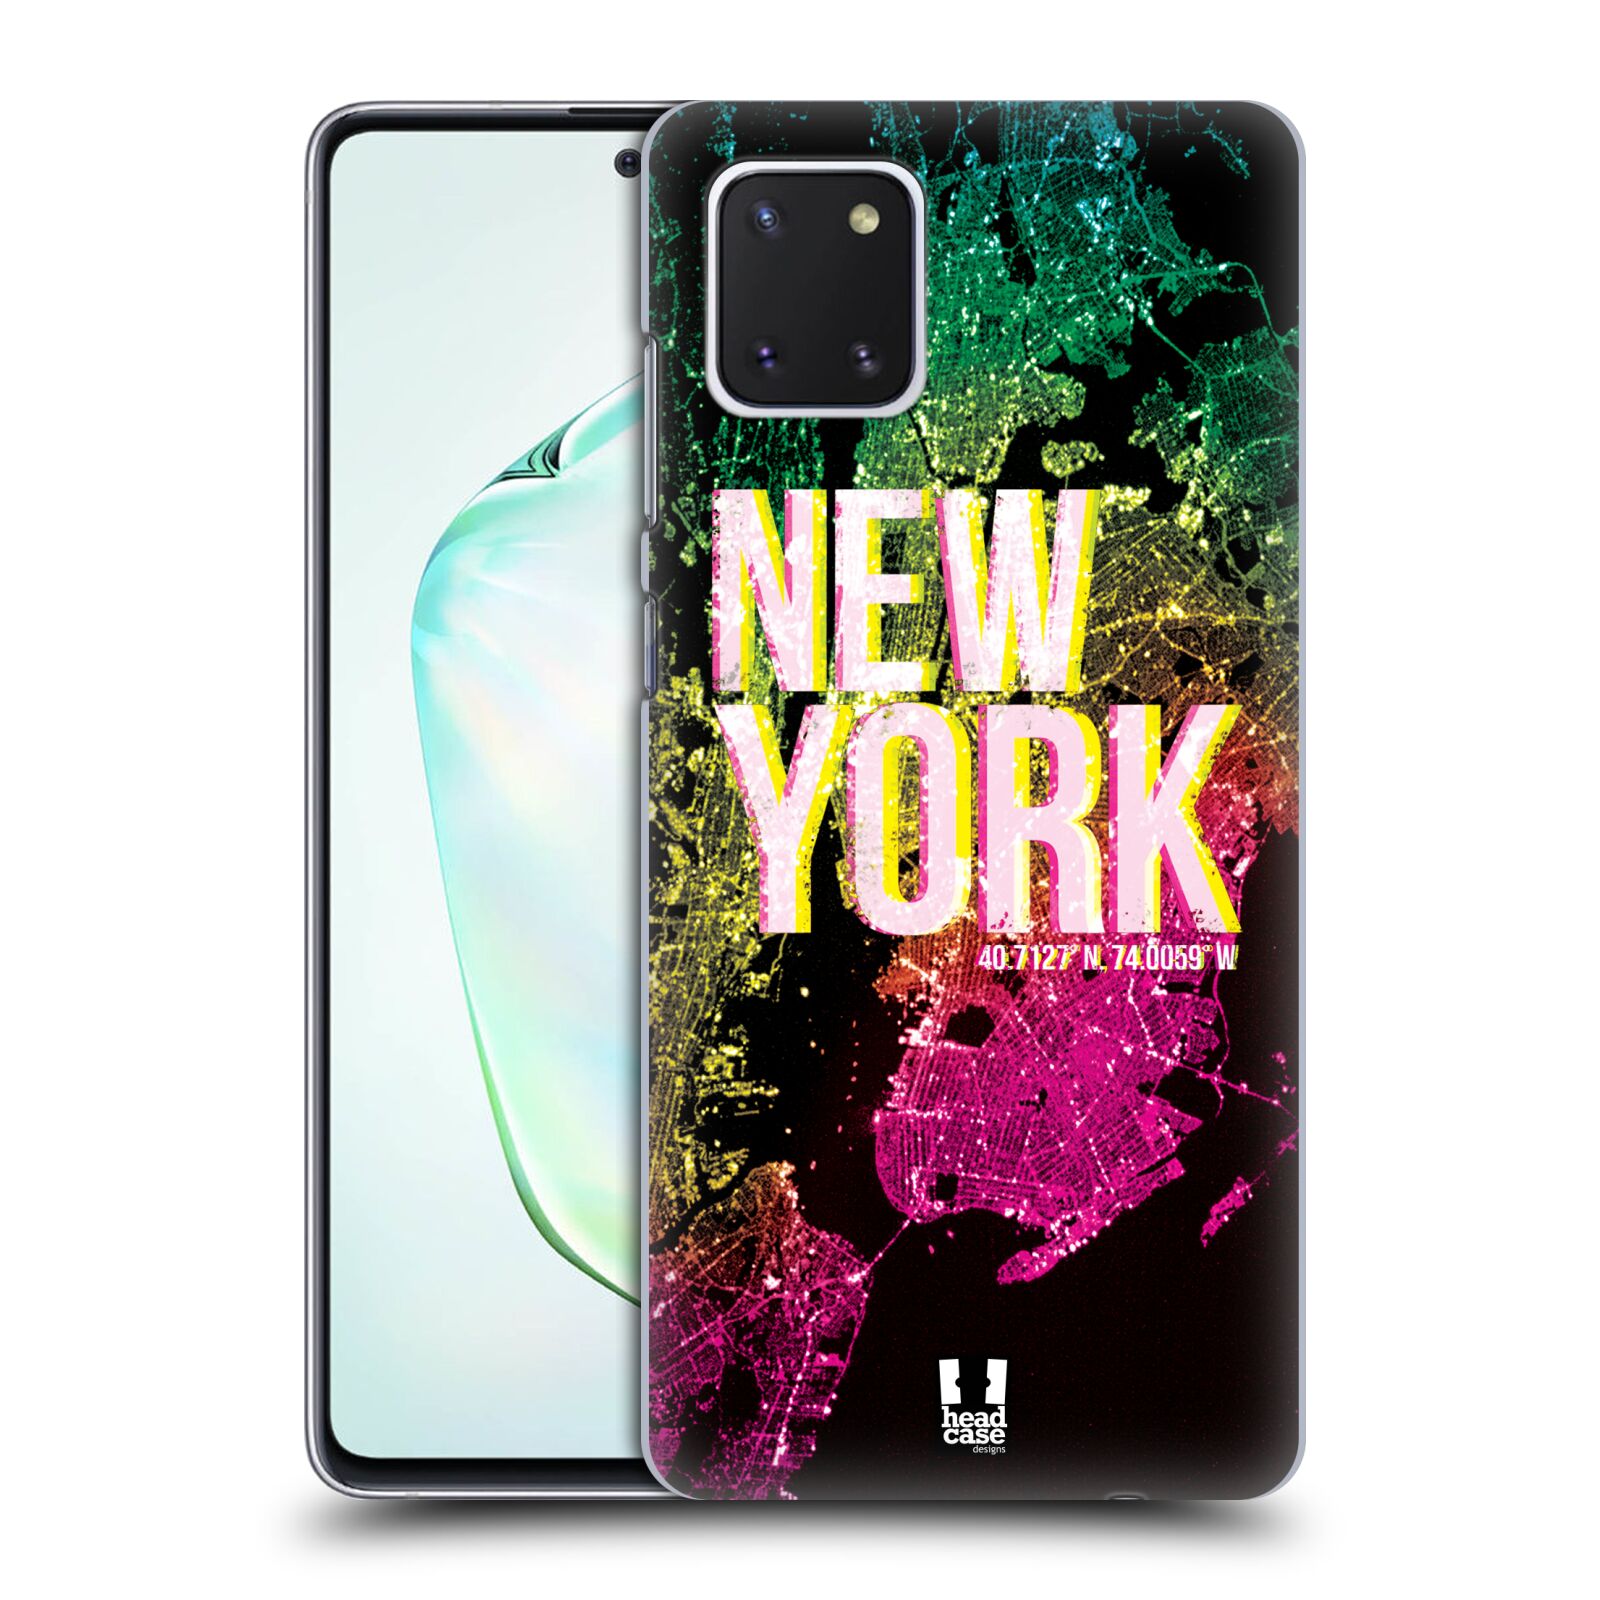 Pouzdro na mobil Samsung Galaxy Note 10 LITE - HEAD CASE - vzor Světla známých měst, Satelitní snímky USA, NEW YORK